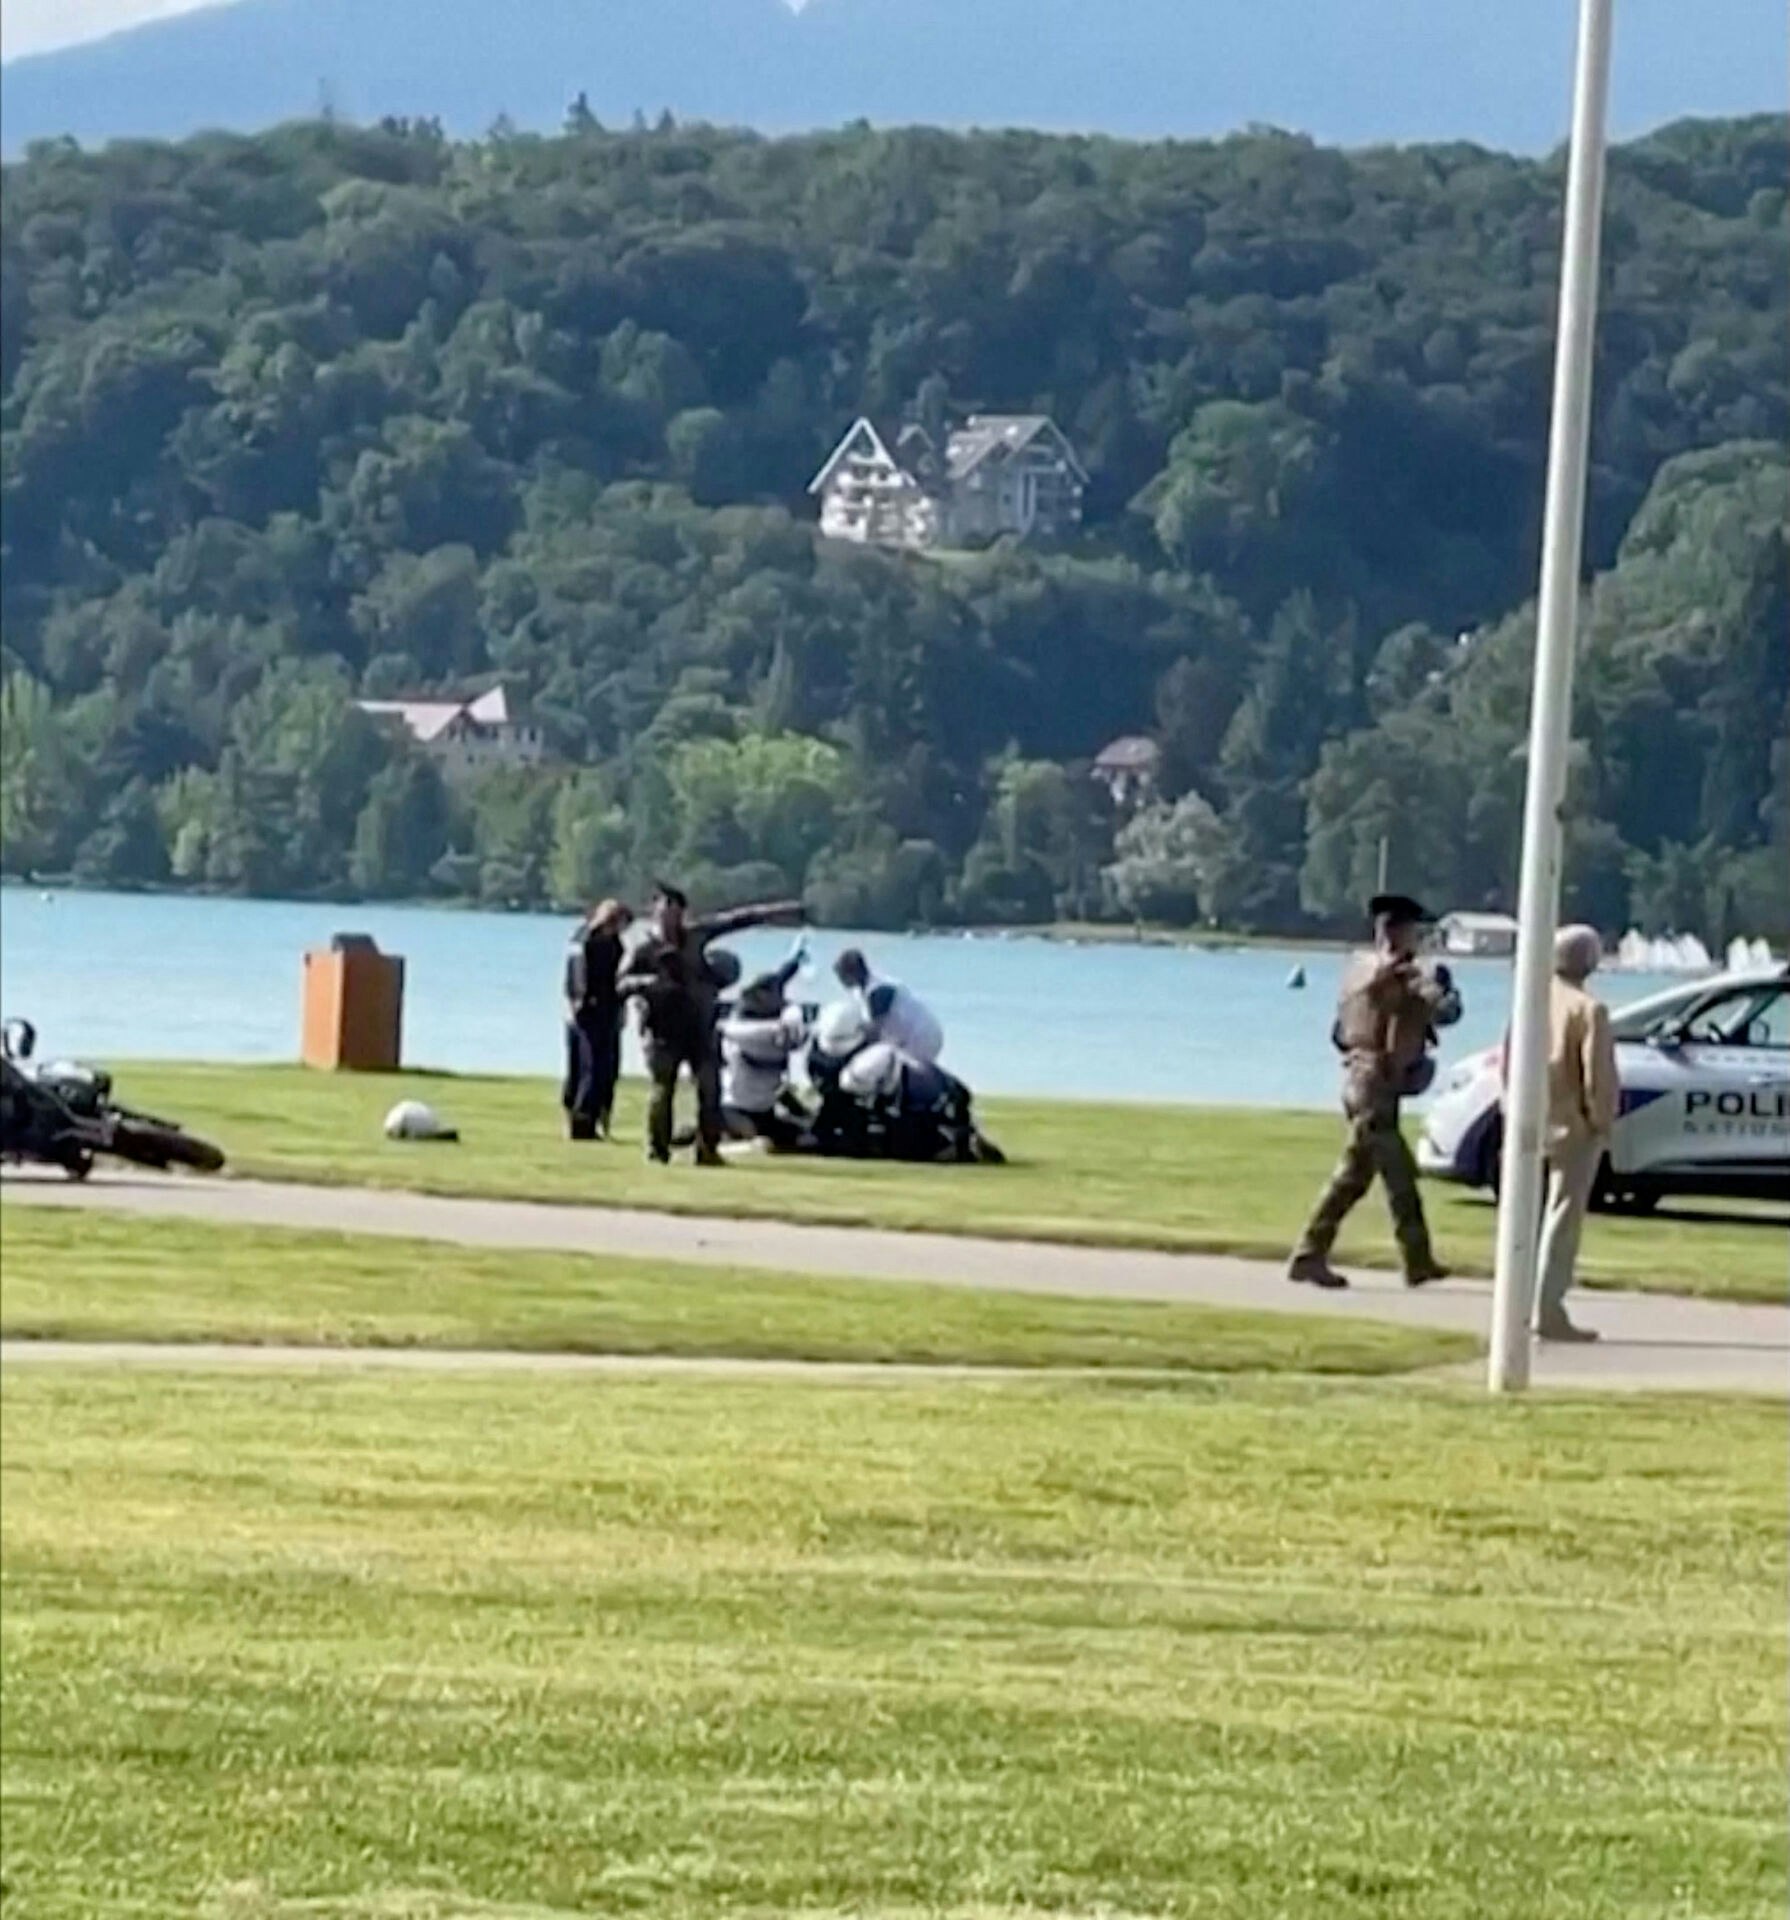 Et billede af fransk politi i gang med at arrestere den formodede gerningsmand efter et knivstikkeri i en park i Annecy, Frankrig torsdag morgen.